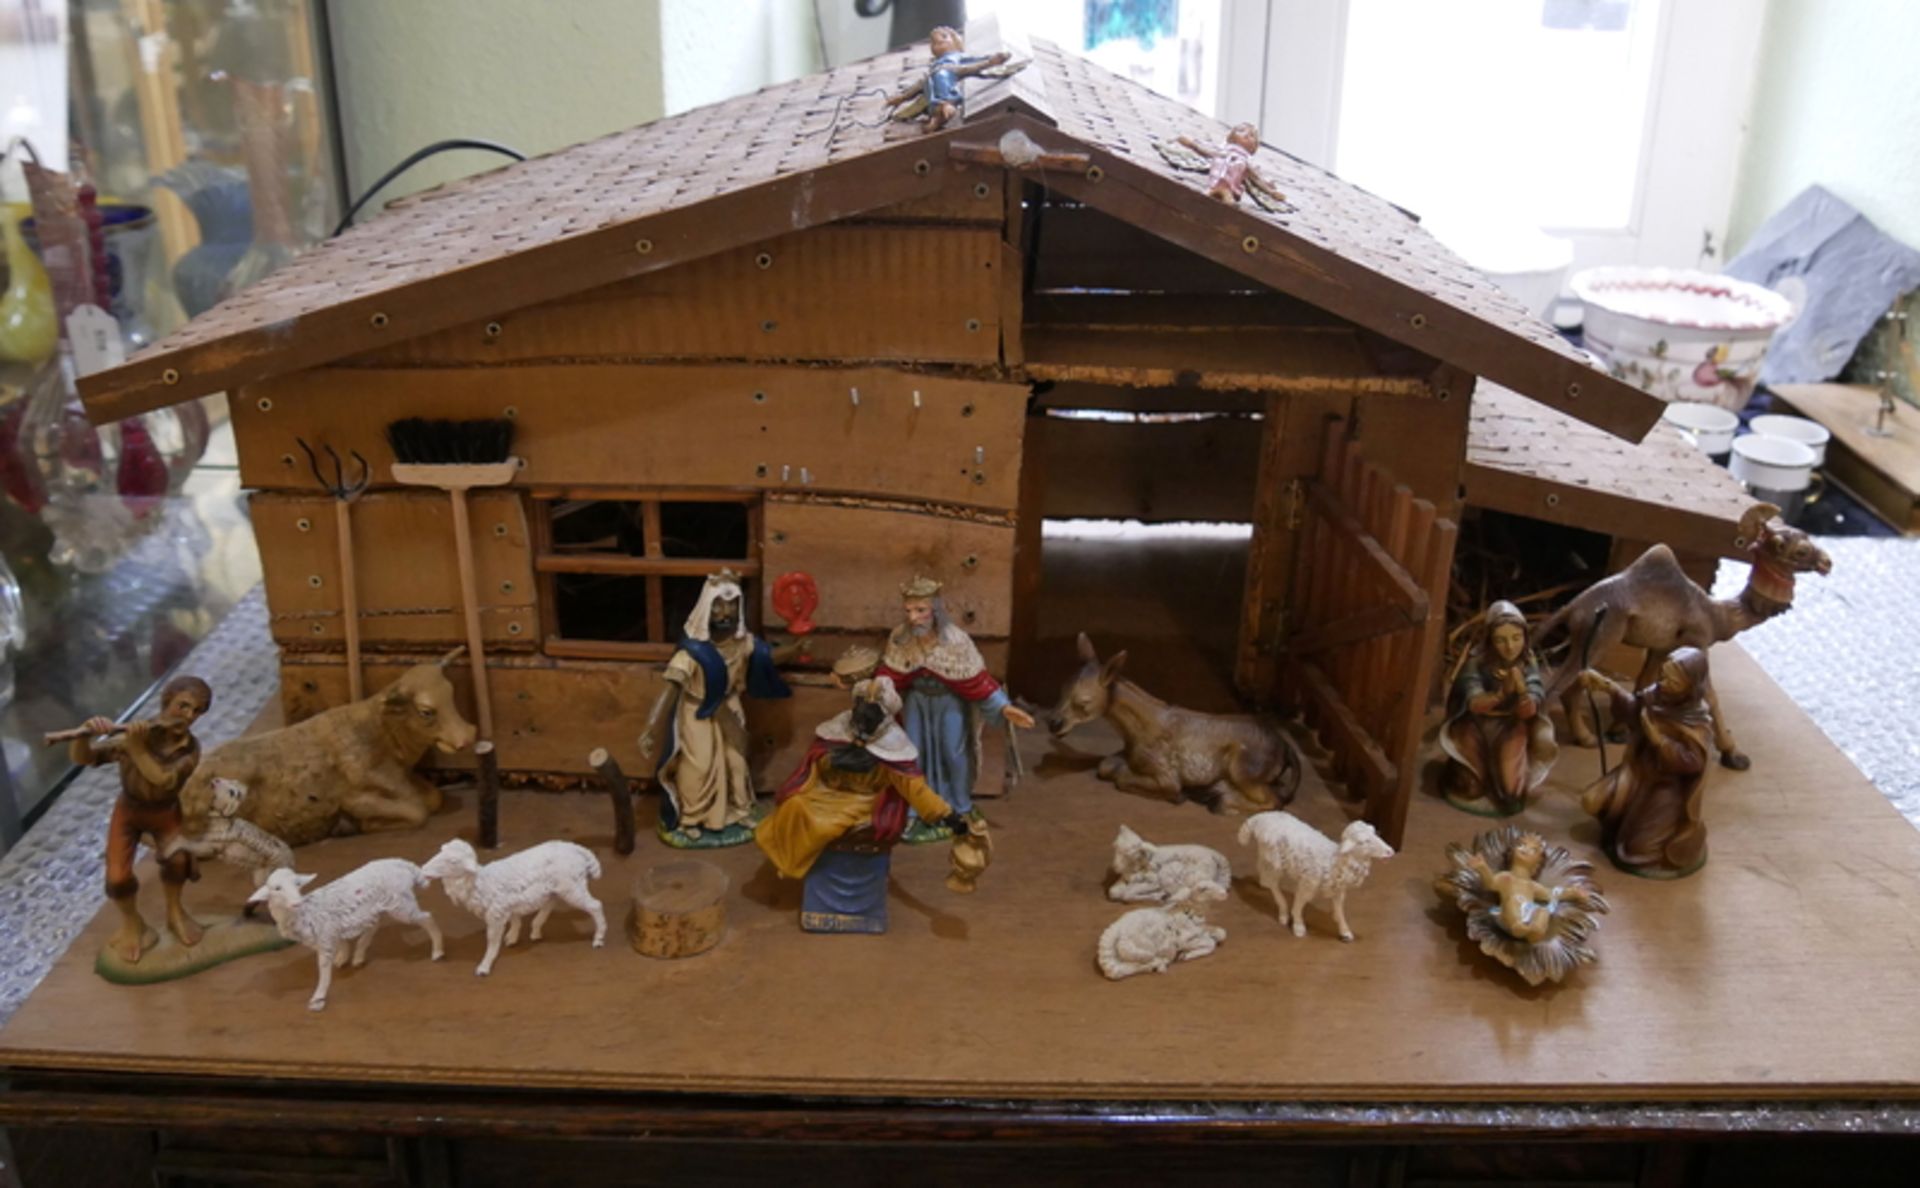 große Holzkrippe mit Beleuchtung. Dabei 17 Krippenfiguren, Josef, Maria, Jesuskind, Schafe, etc.